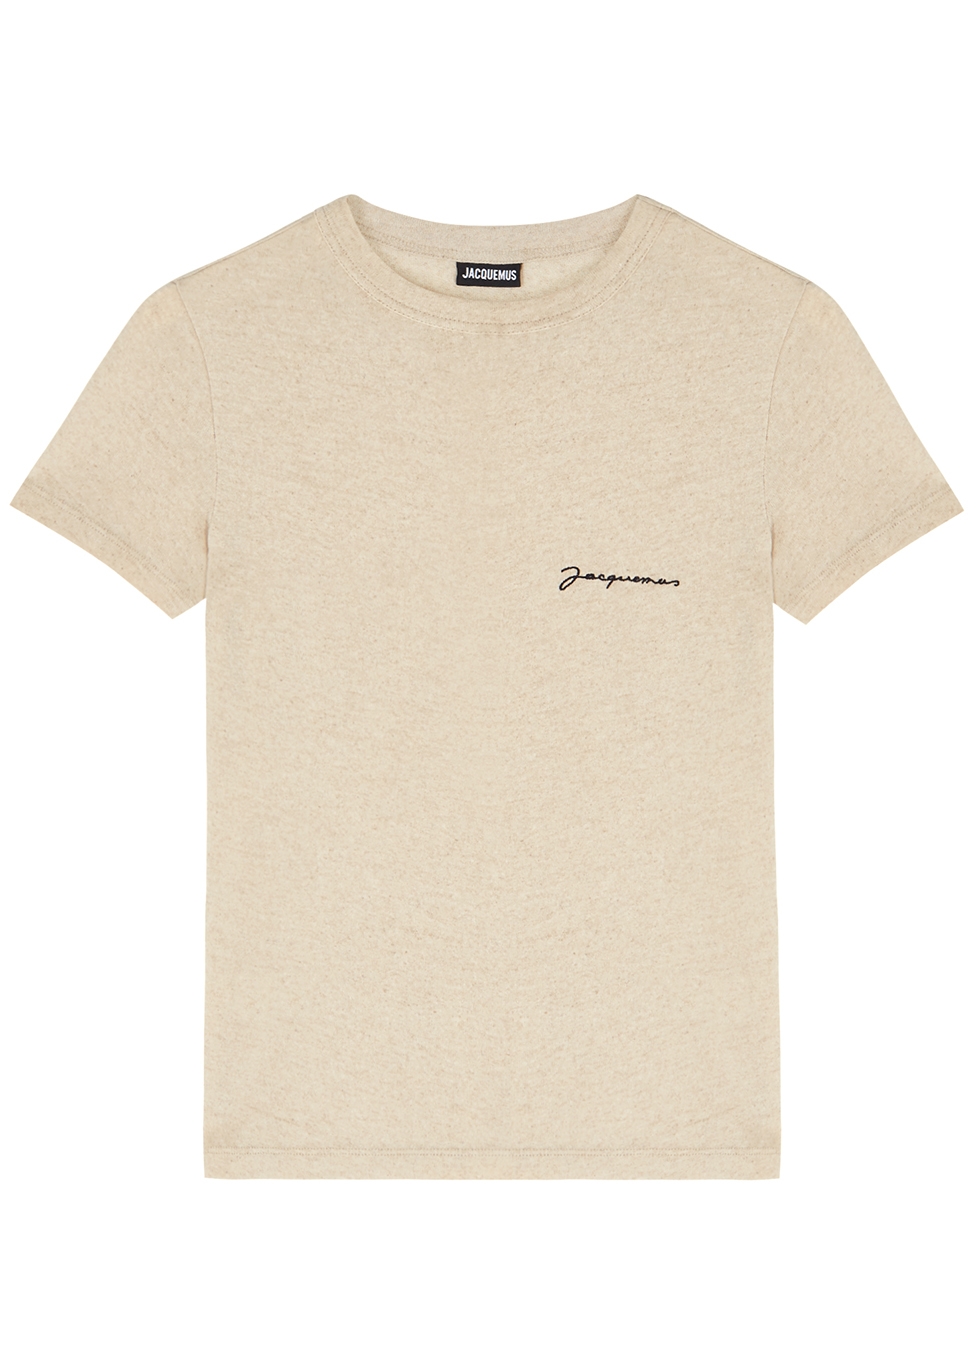 Jacquemus Le T-shirt Jacquemus oatmeal jersey top - Harvey Nichols